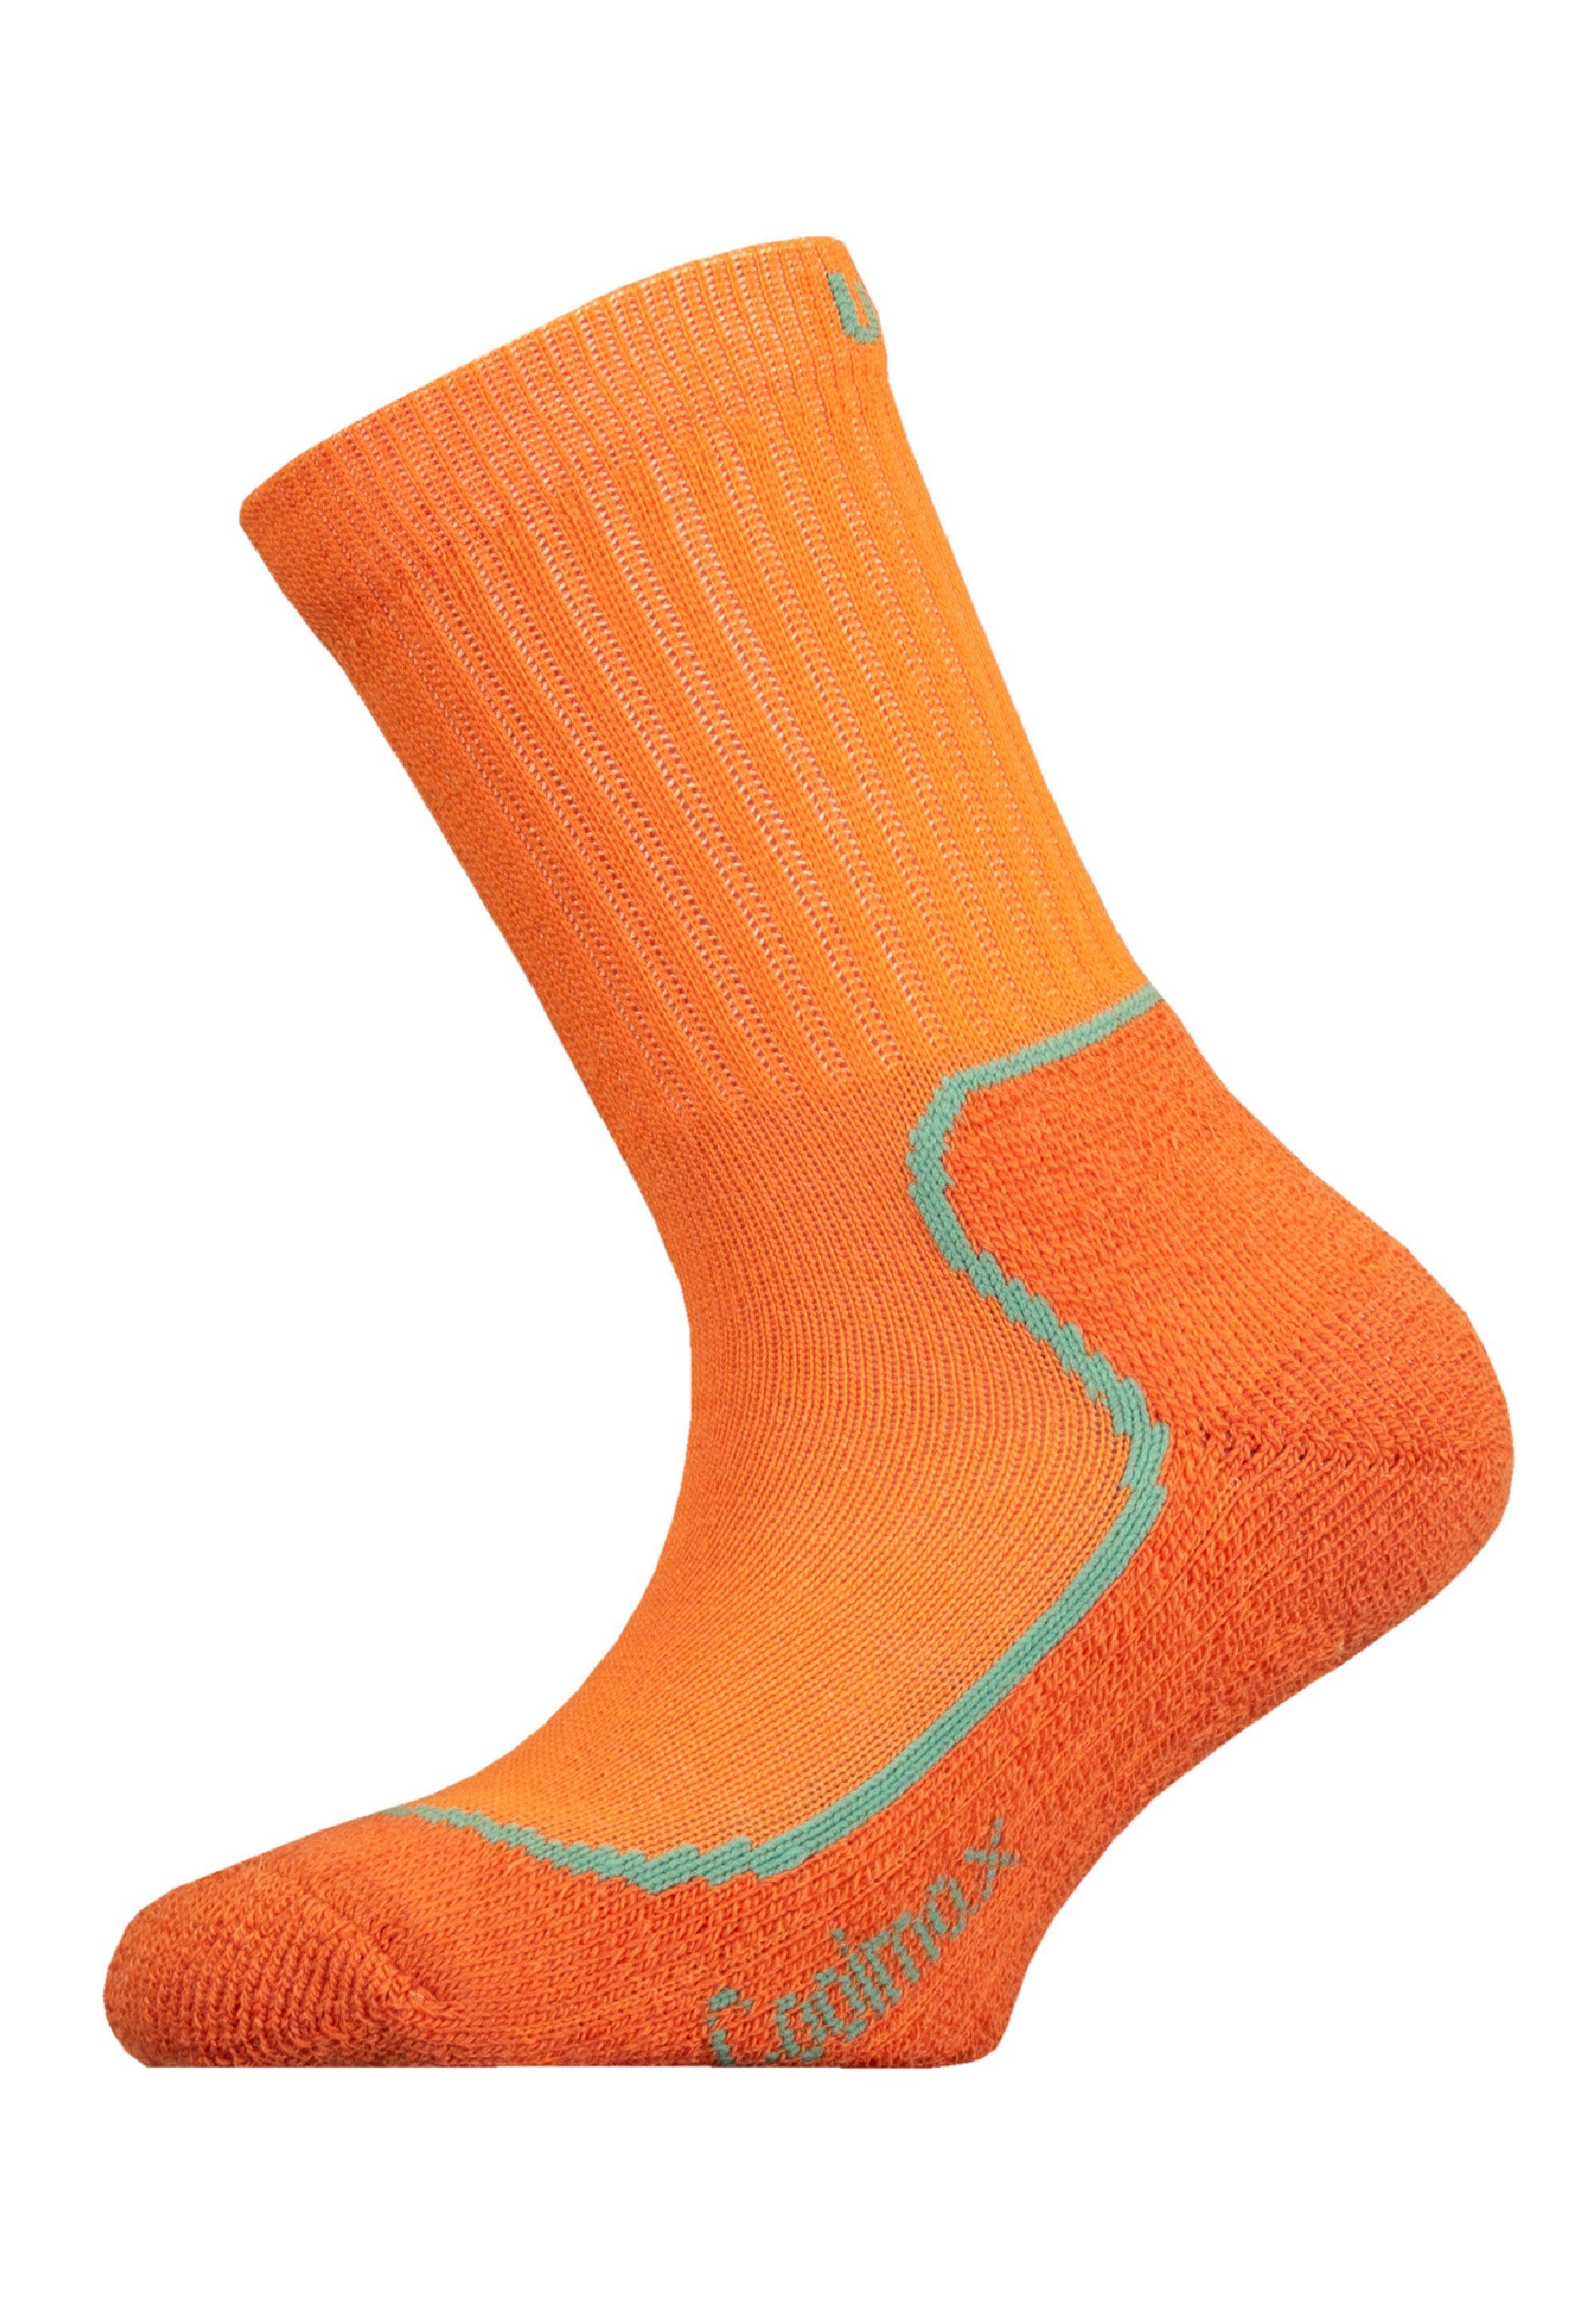 KEVO JR Struktur (1-Paar) UphillSport mit orange Coolmax mehrlagiger Socken und